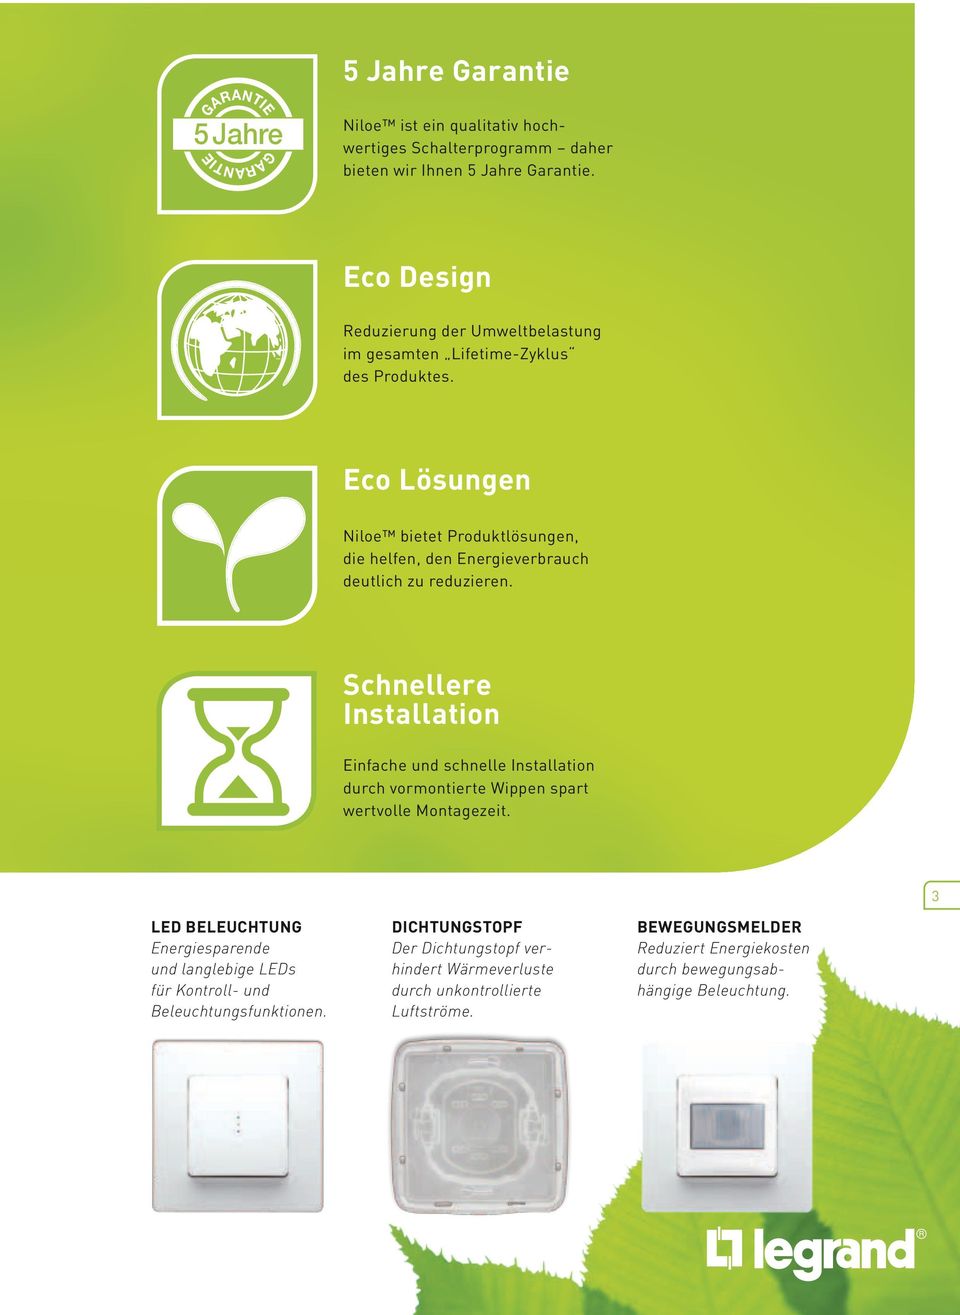 Eco Lösungen Niloe bietet Produktlösungen, die helfen, den Energieverbrauch deutlich zu reduzieren.